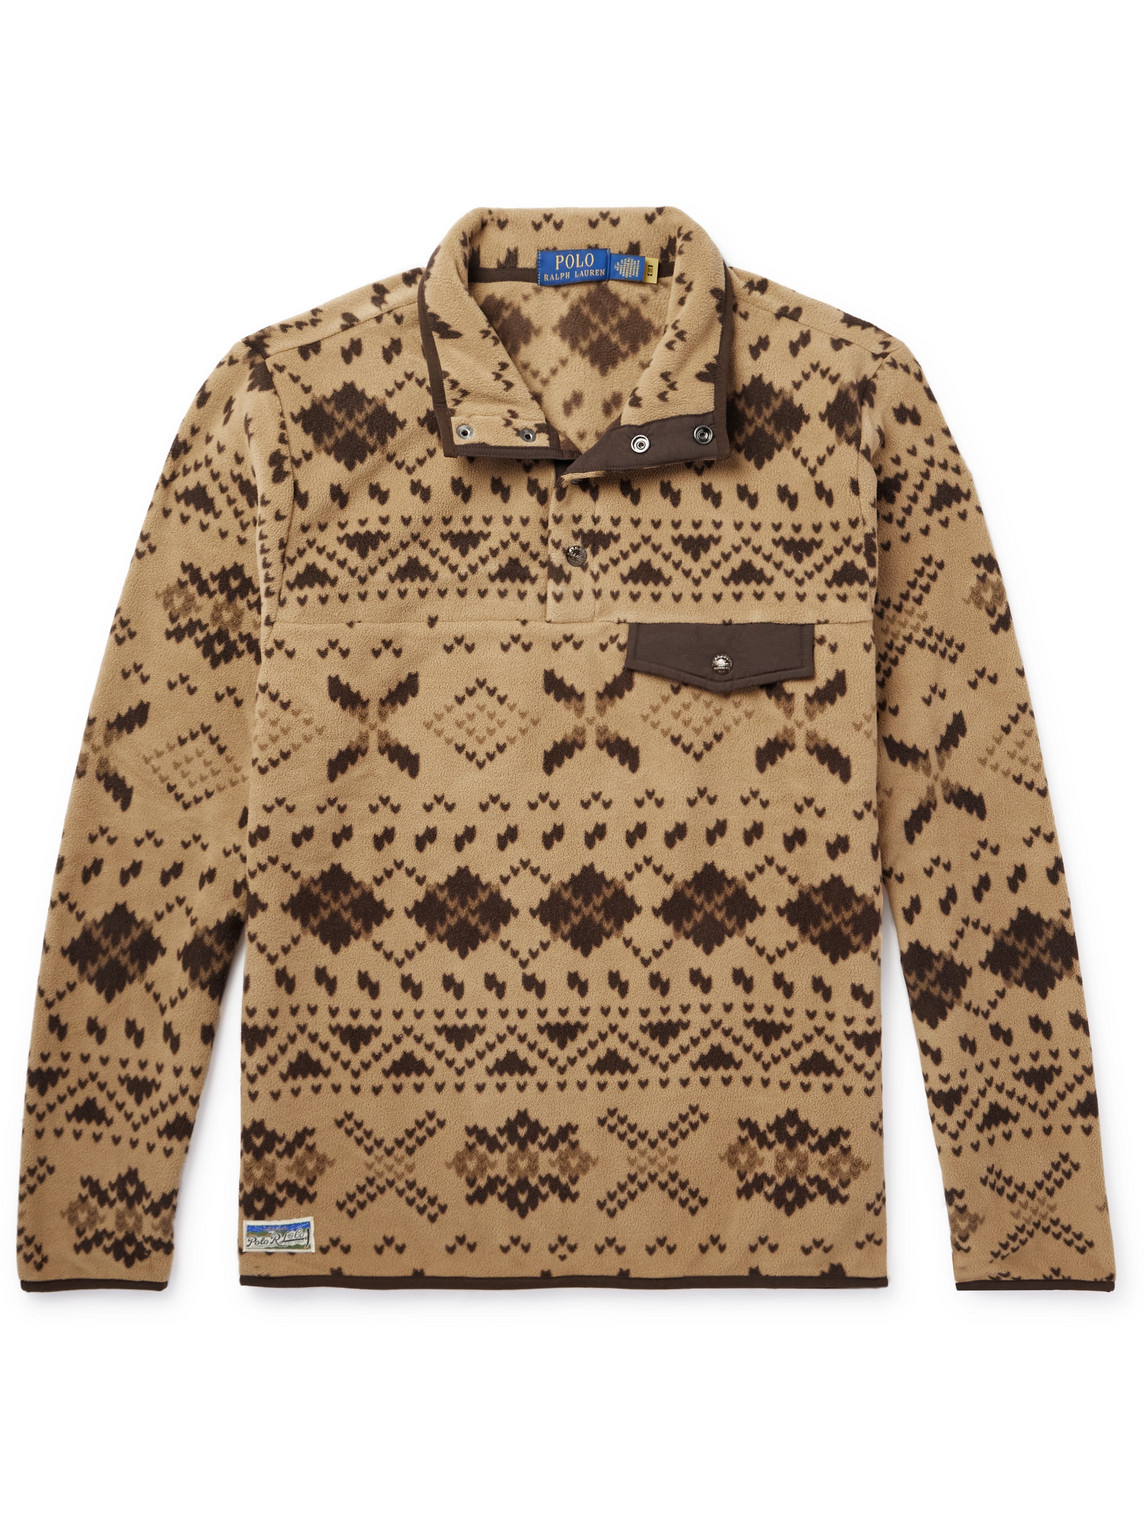 Polo Ralph Lauren - Fair Isle Recycled Brushed Fleece Sweatshirt - Men - Brown - L von Polo Ralph Lauren